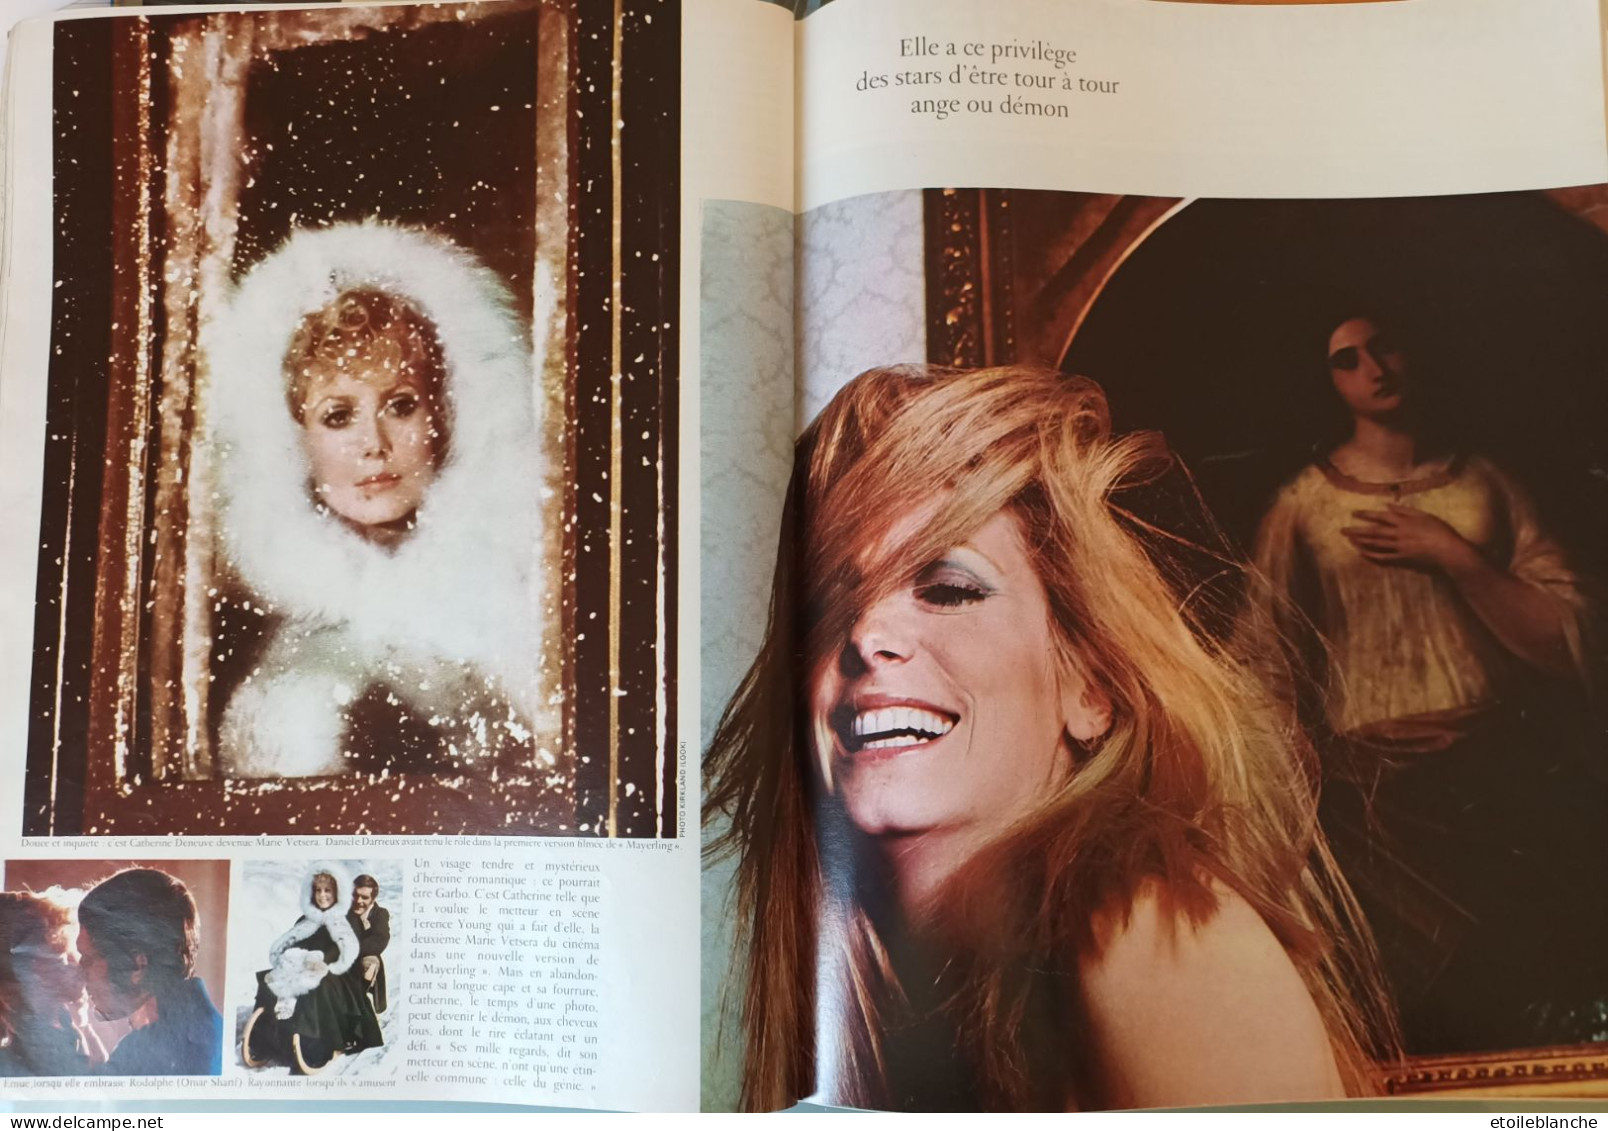 CATHERINE DENEUVE - Photos Mode D'une Revue Paris Match 1968 + 2 Autres (revue Datée 1970) - Lifestyle & Mode